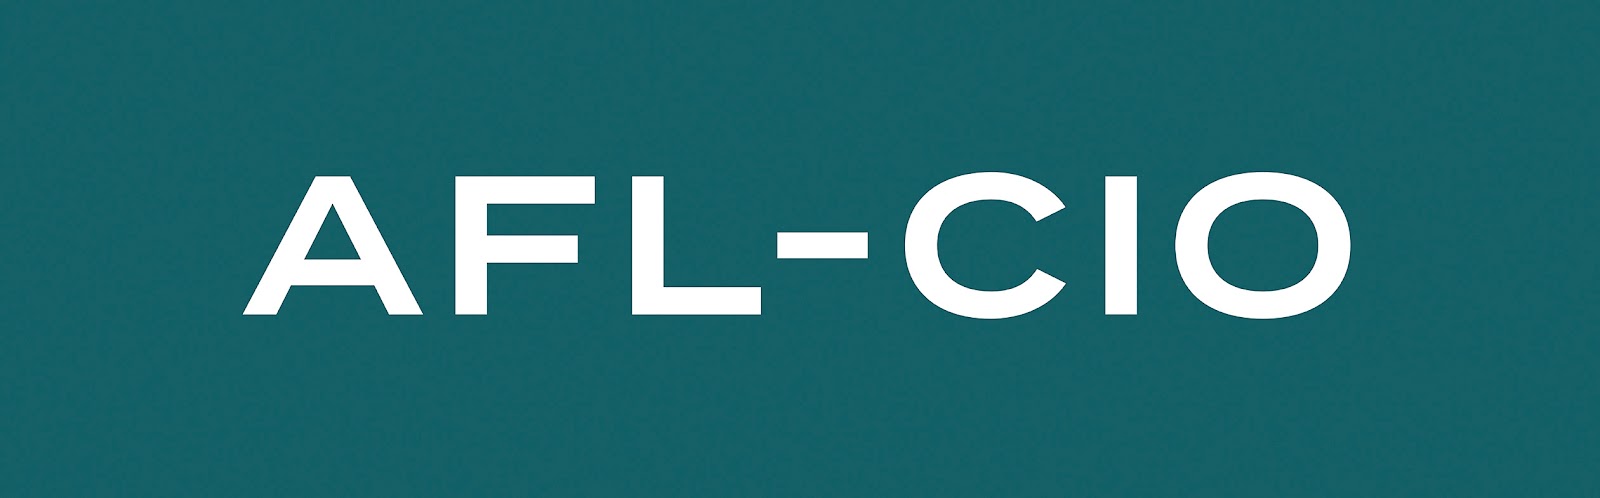 afl-cio-Logo-OnTeal-NoTag-RGB.jpg